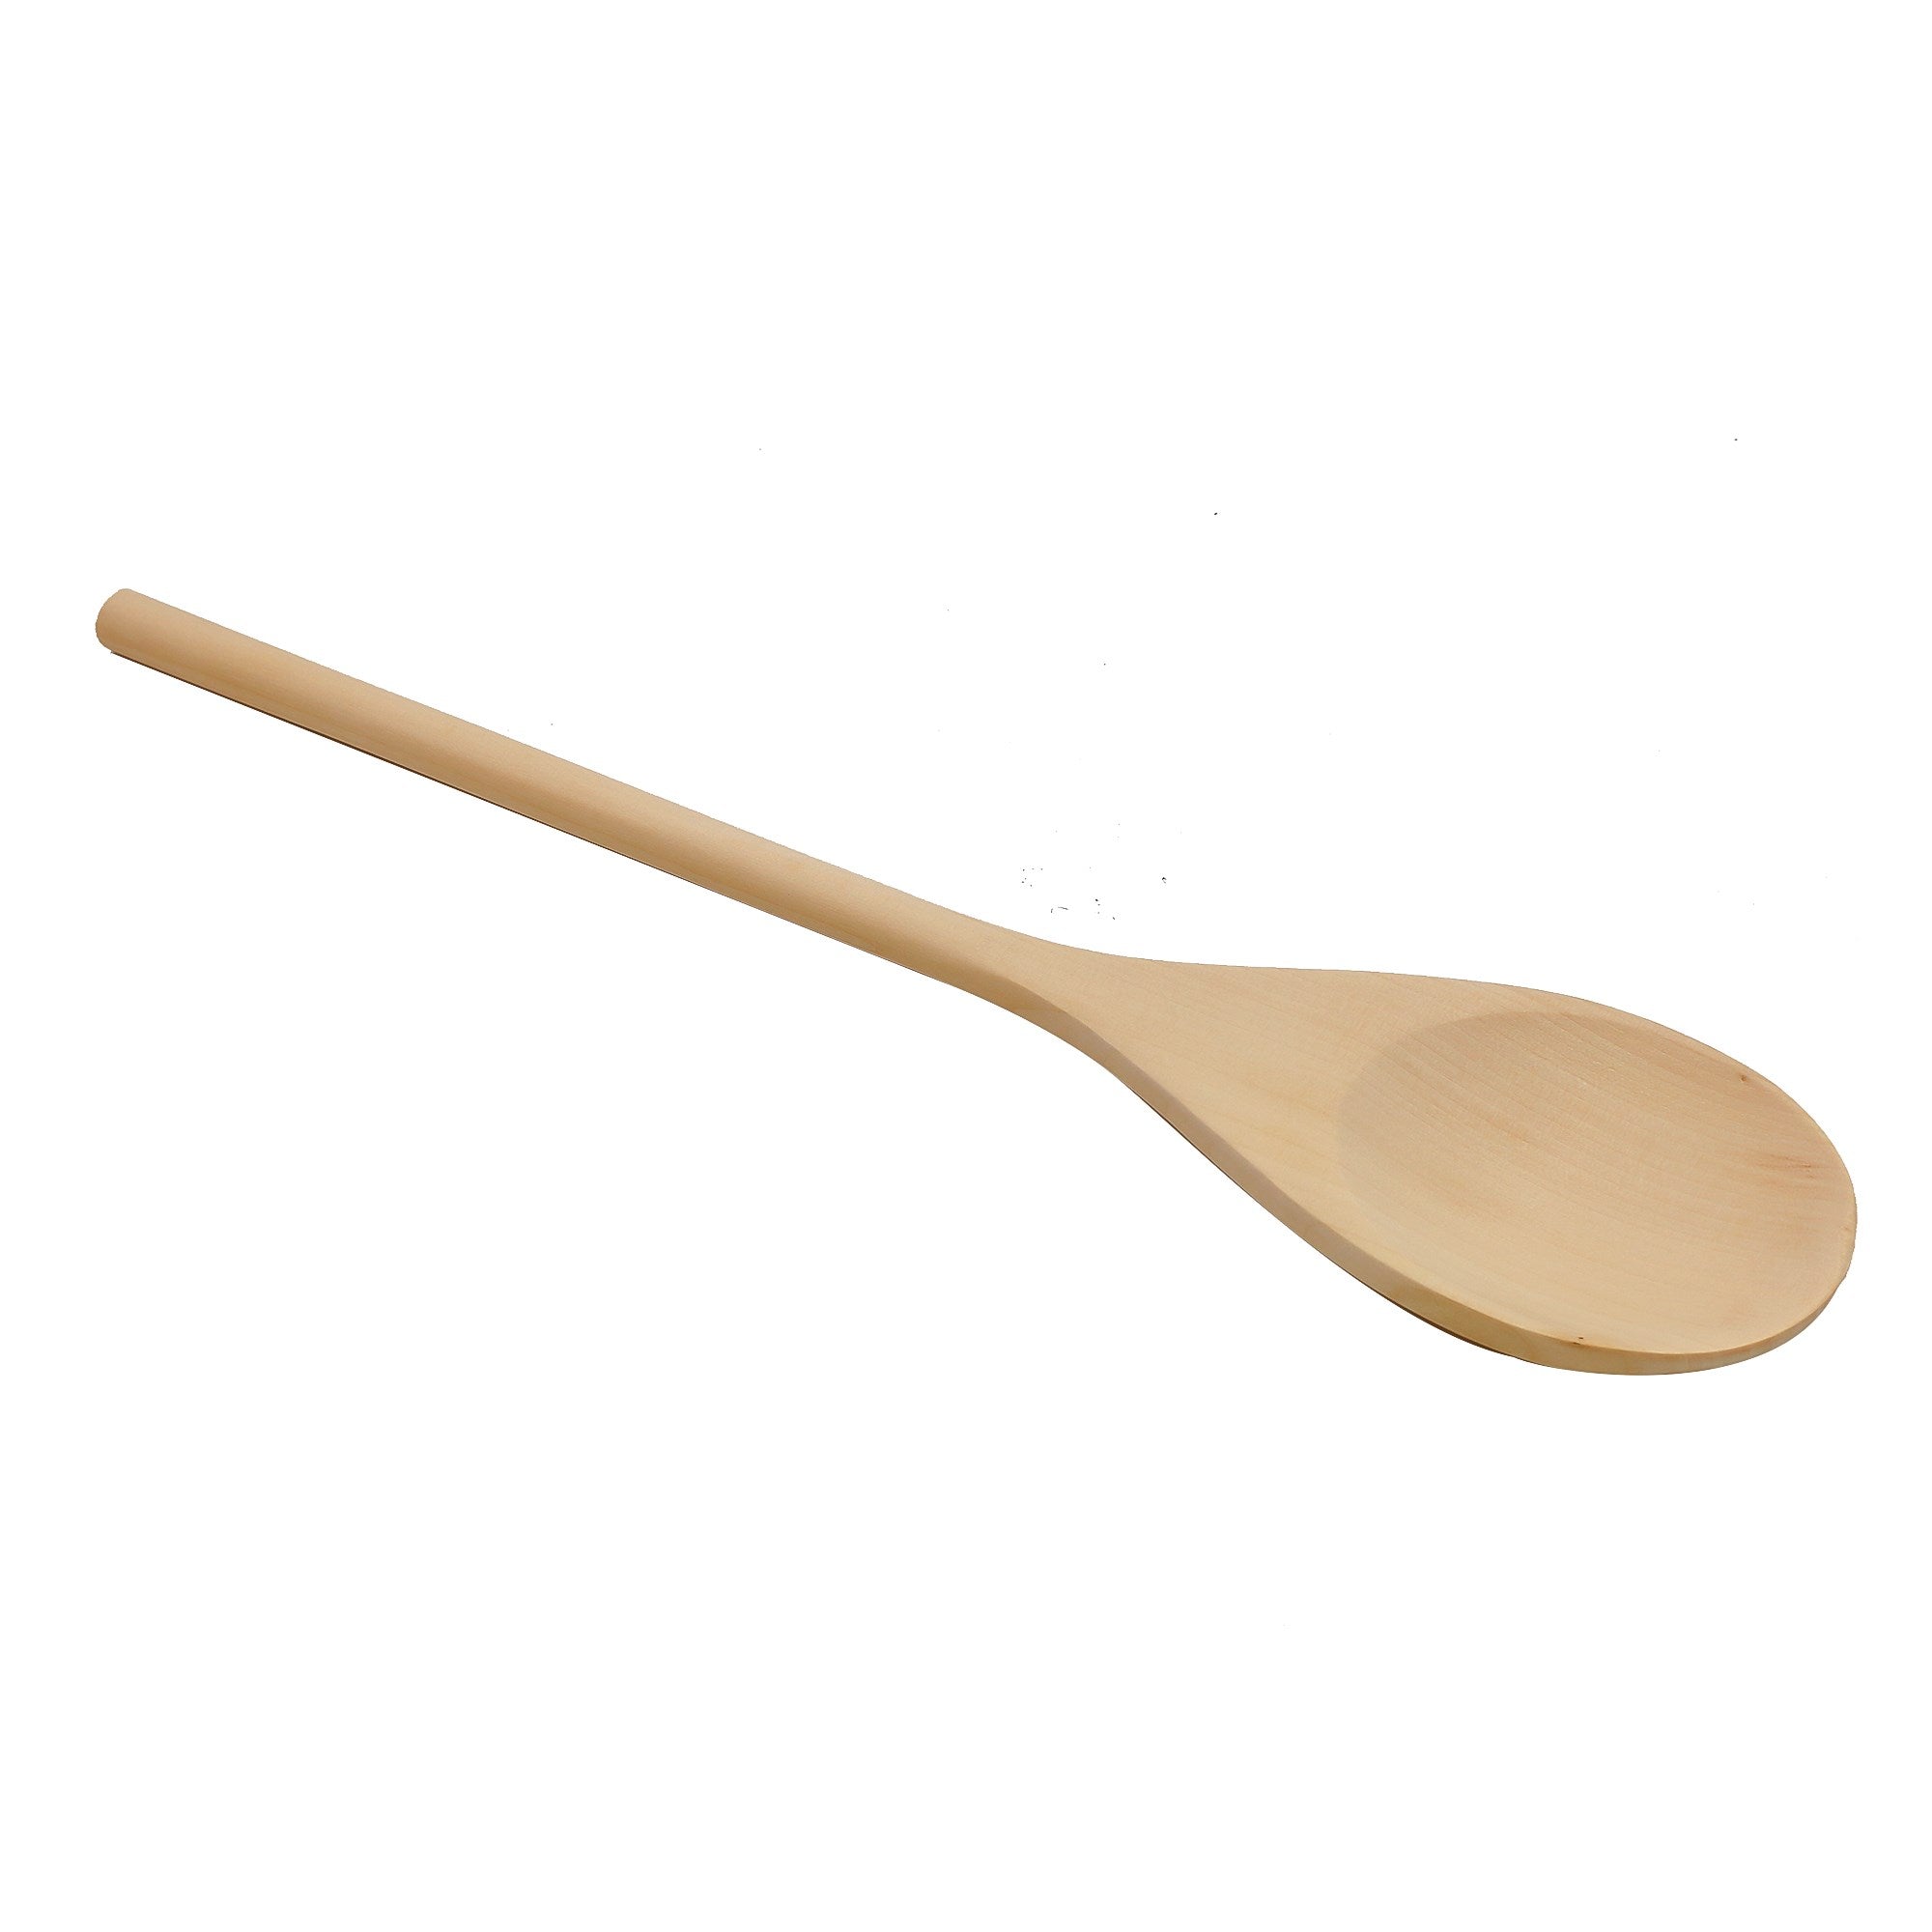 Jumbo Wooden Spoon - Dollars and Sense